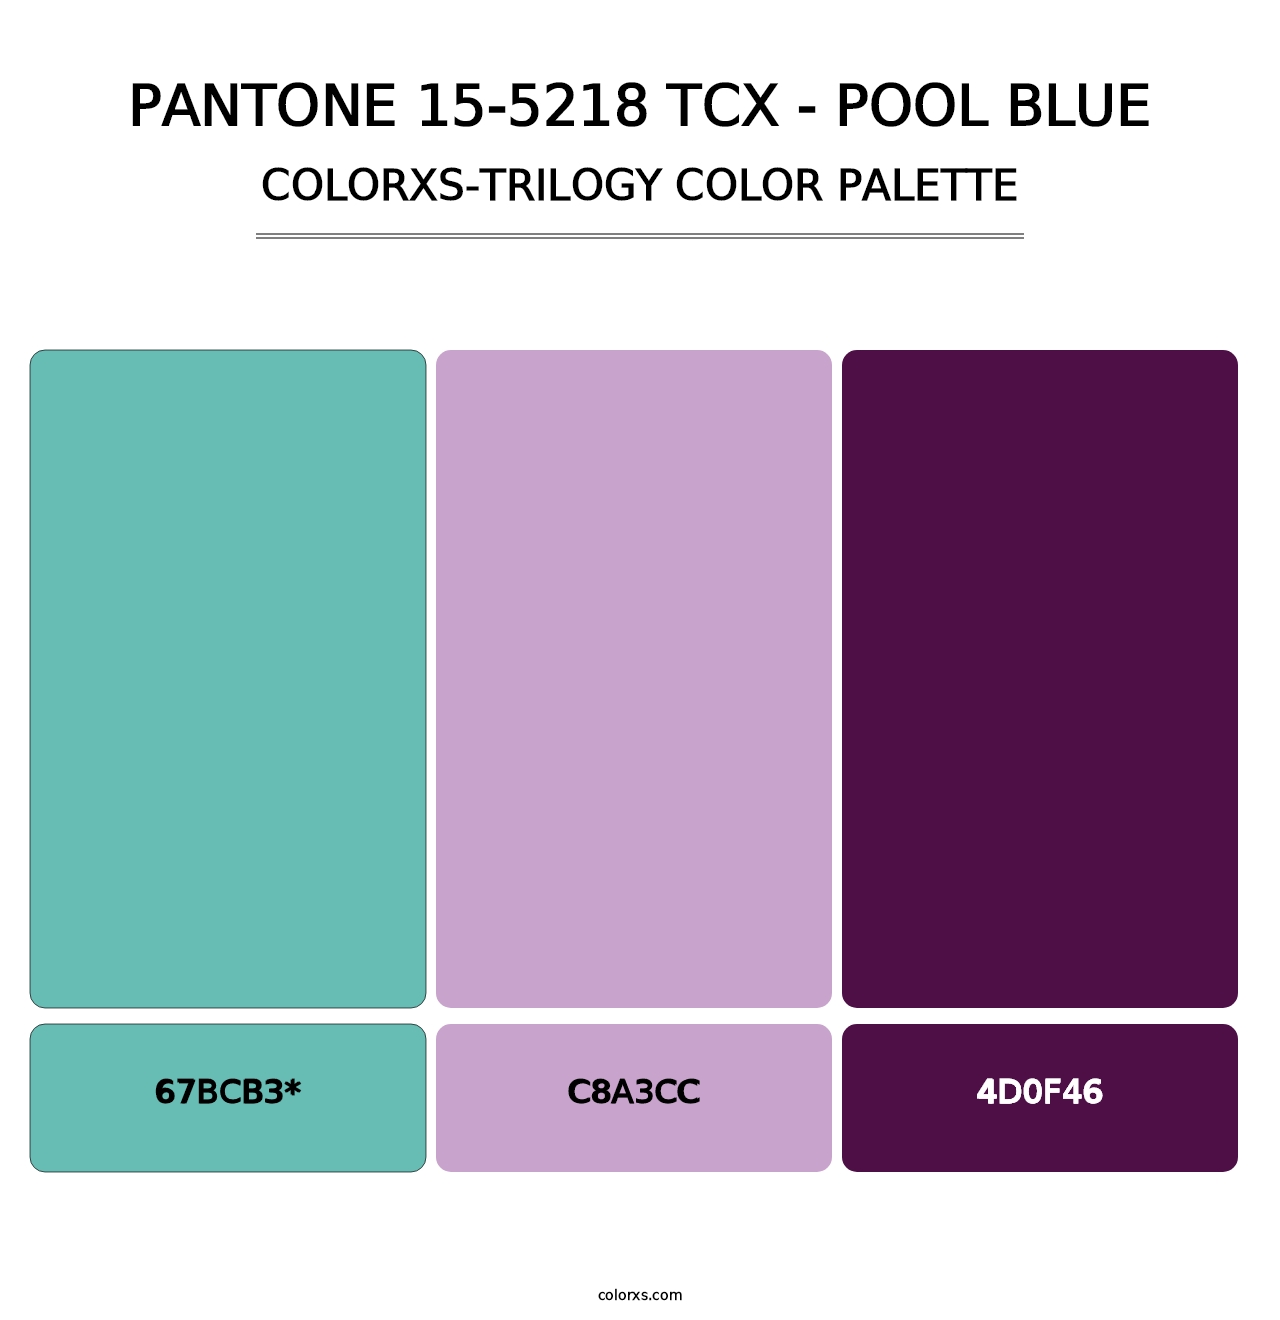 PANTONE 15-5218 TCX - Pool Blue - Colorxs Trilogy Palette